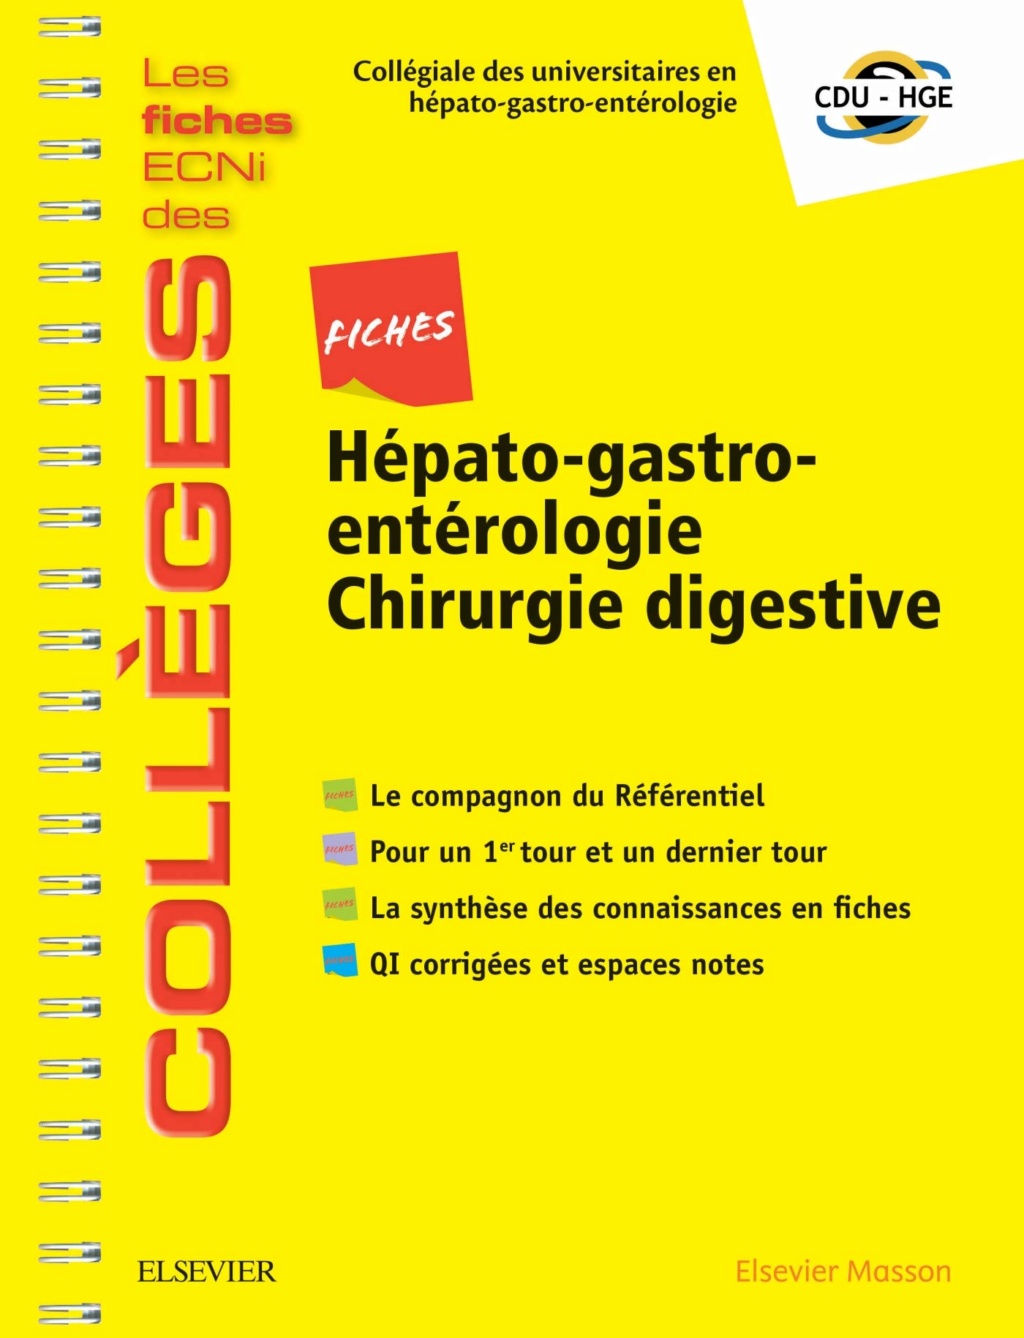 Livres Médicales - Fiches Hépato-gastro-entérologie Chirurgie digestive: Les fiches ECNi et QI des Collèges 2019 - Page 5 Fiches11